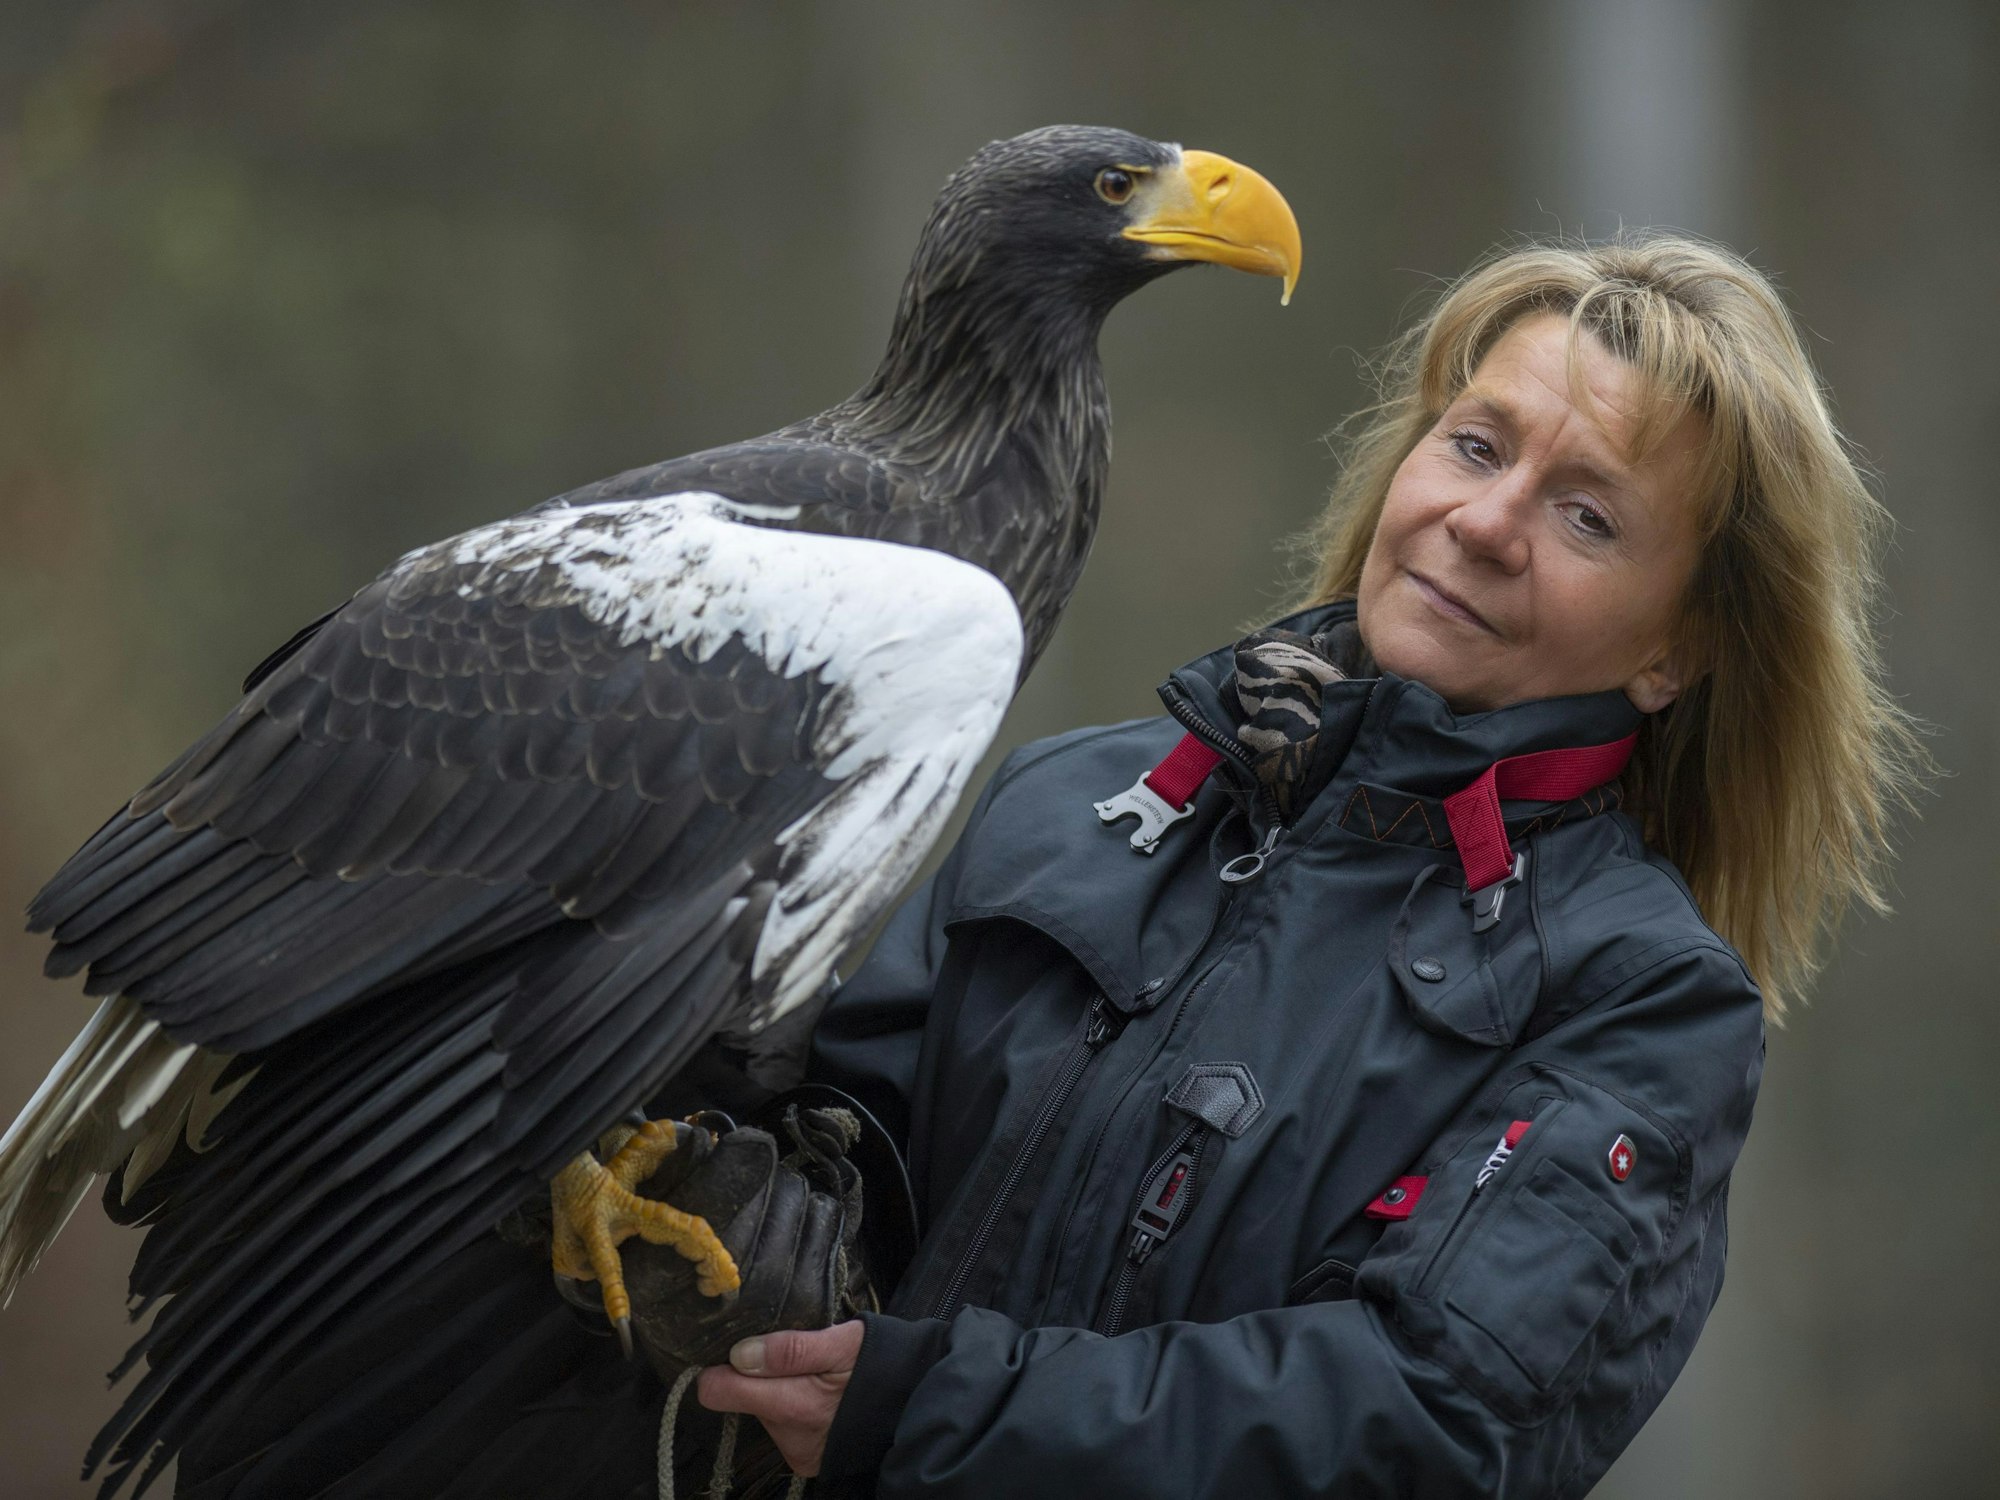 Riesenseeadler Grobi auf dem Arm der Inhaberin der Falknerei Bergisch Land in Remscheid, Carola Schossow.